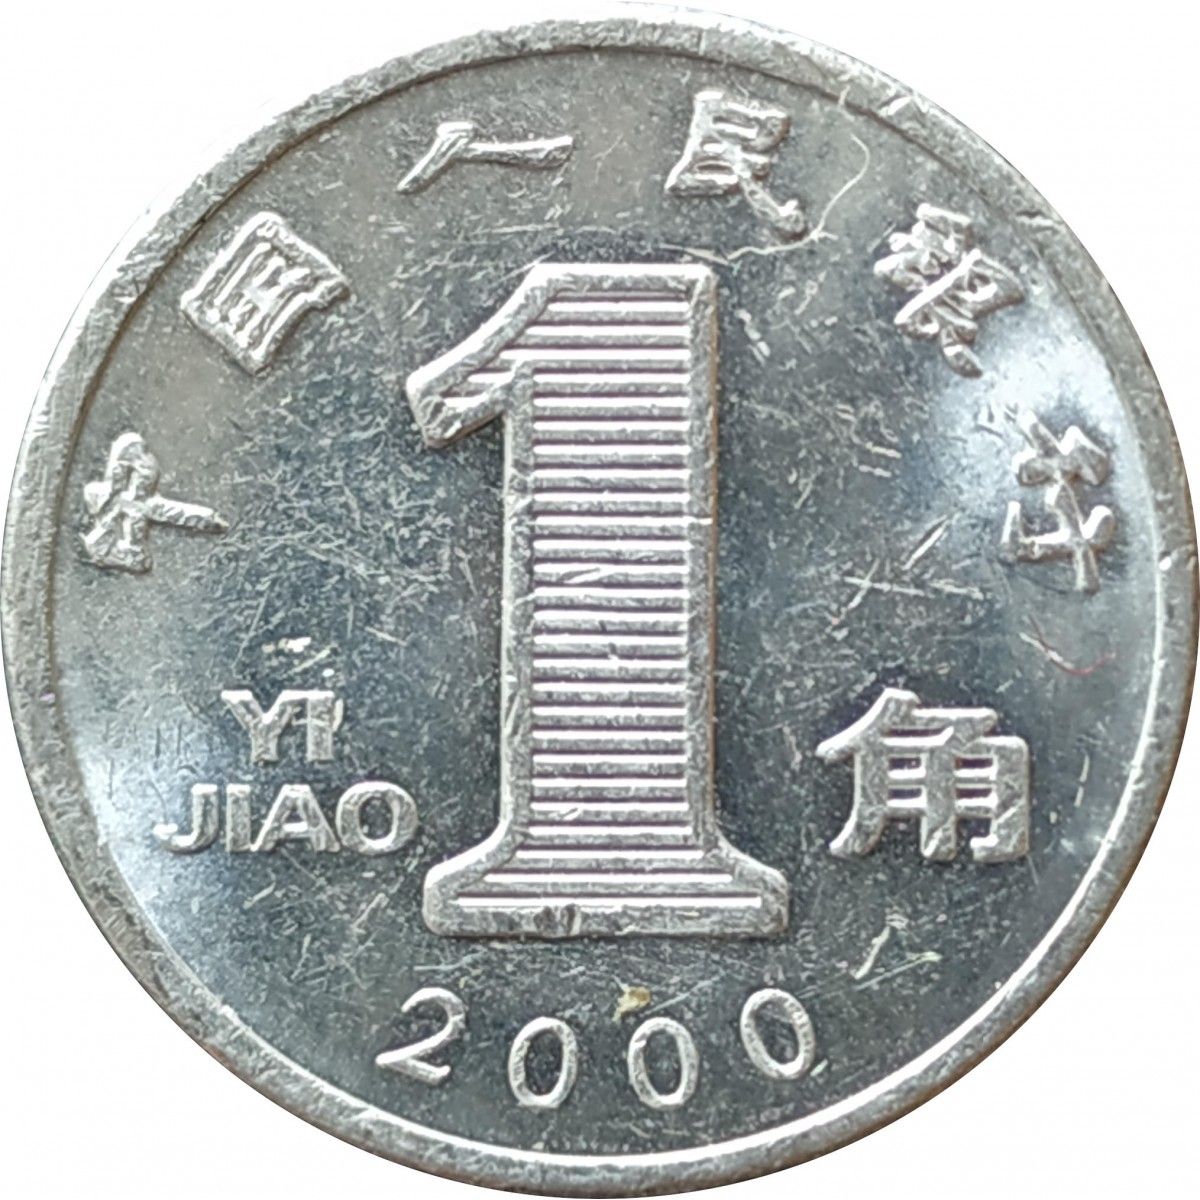 200 тысяч юаней. Китай 1 Цзяо, 2000. Монеты Китая 1 Цзяо. 5 Цзяо. 5 Цзяо монета.